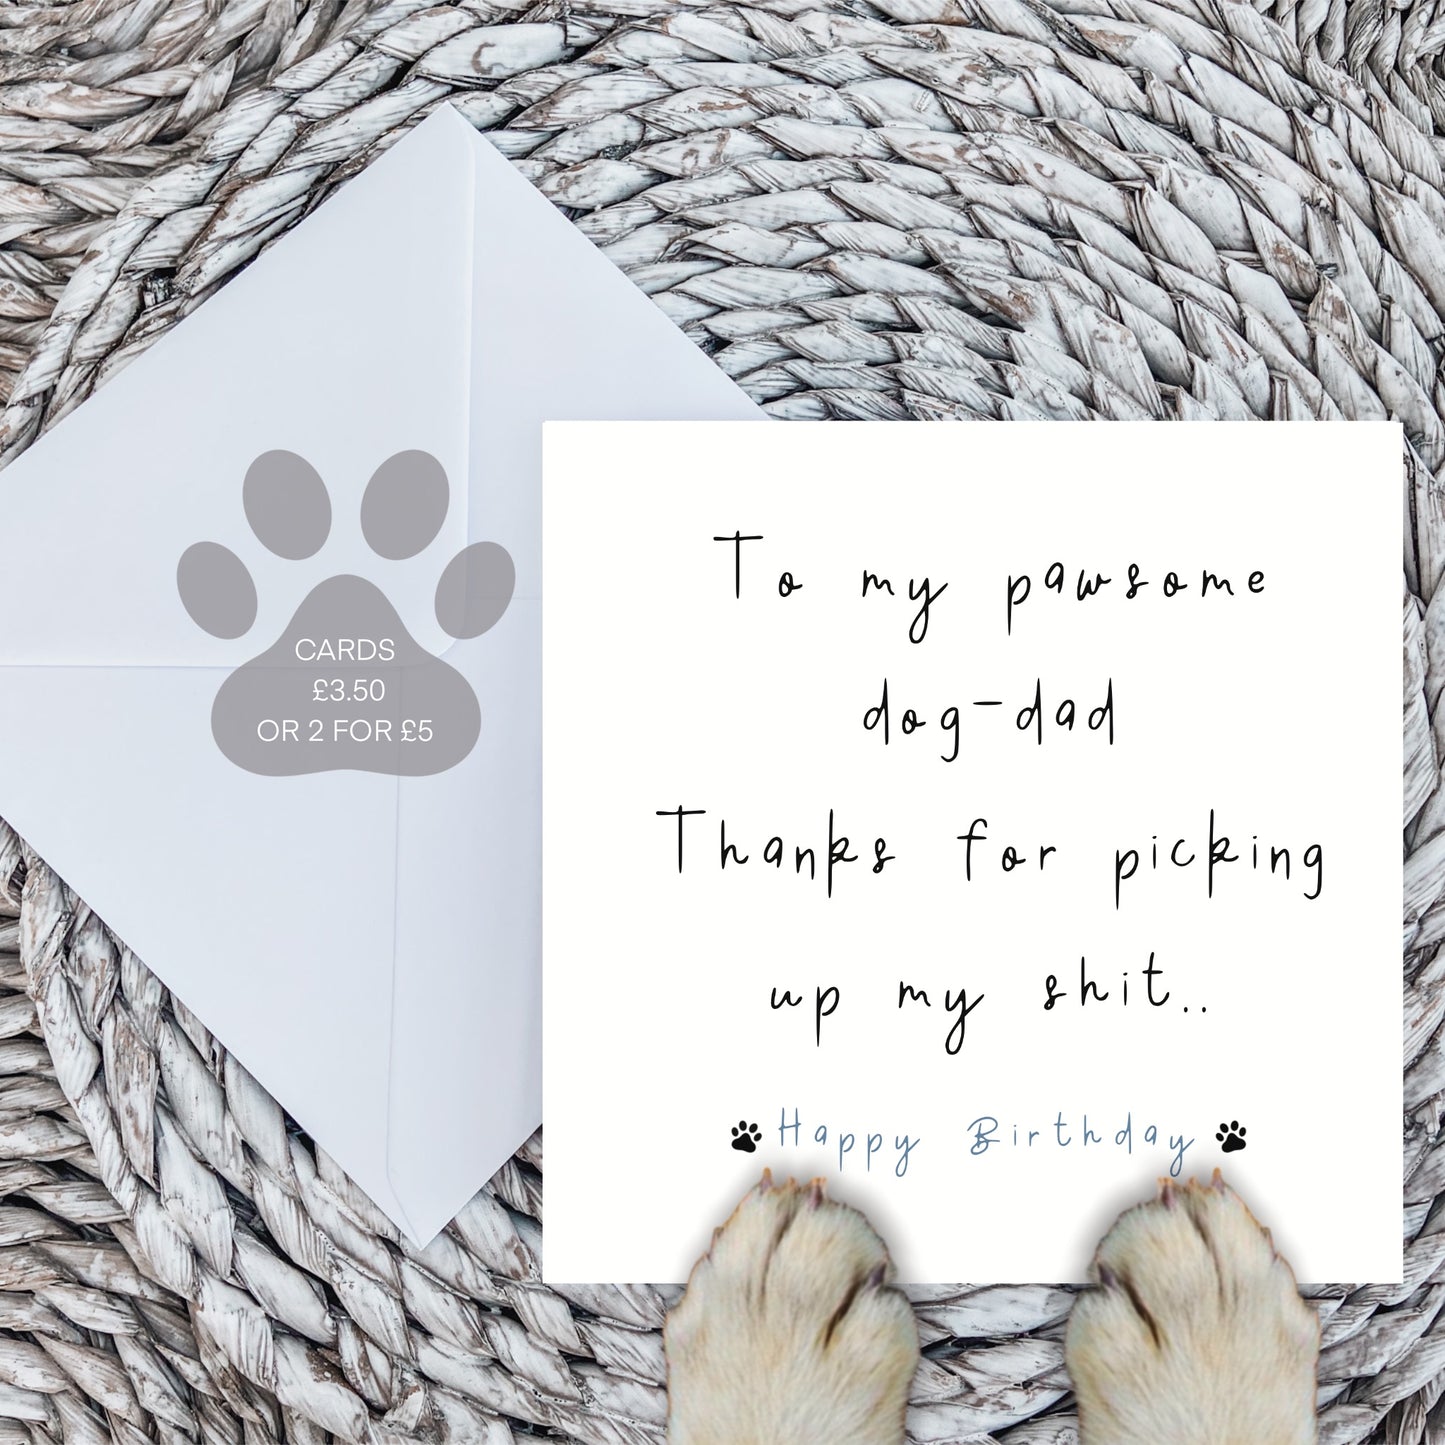 To my pawsome dog-dad card